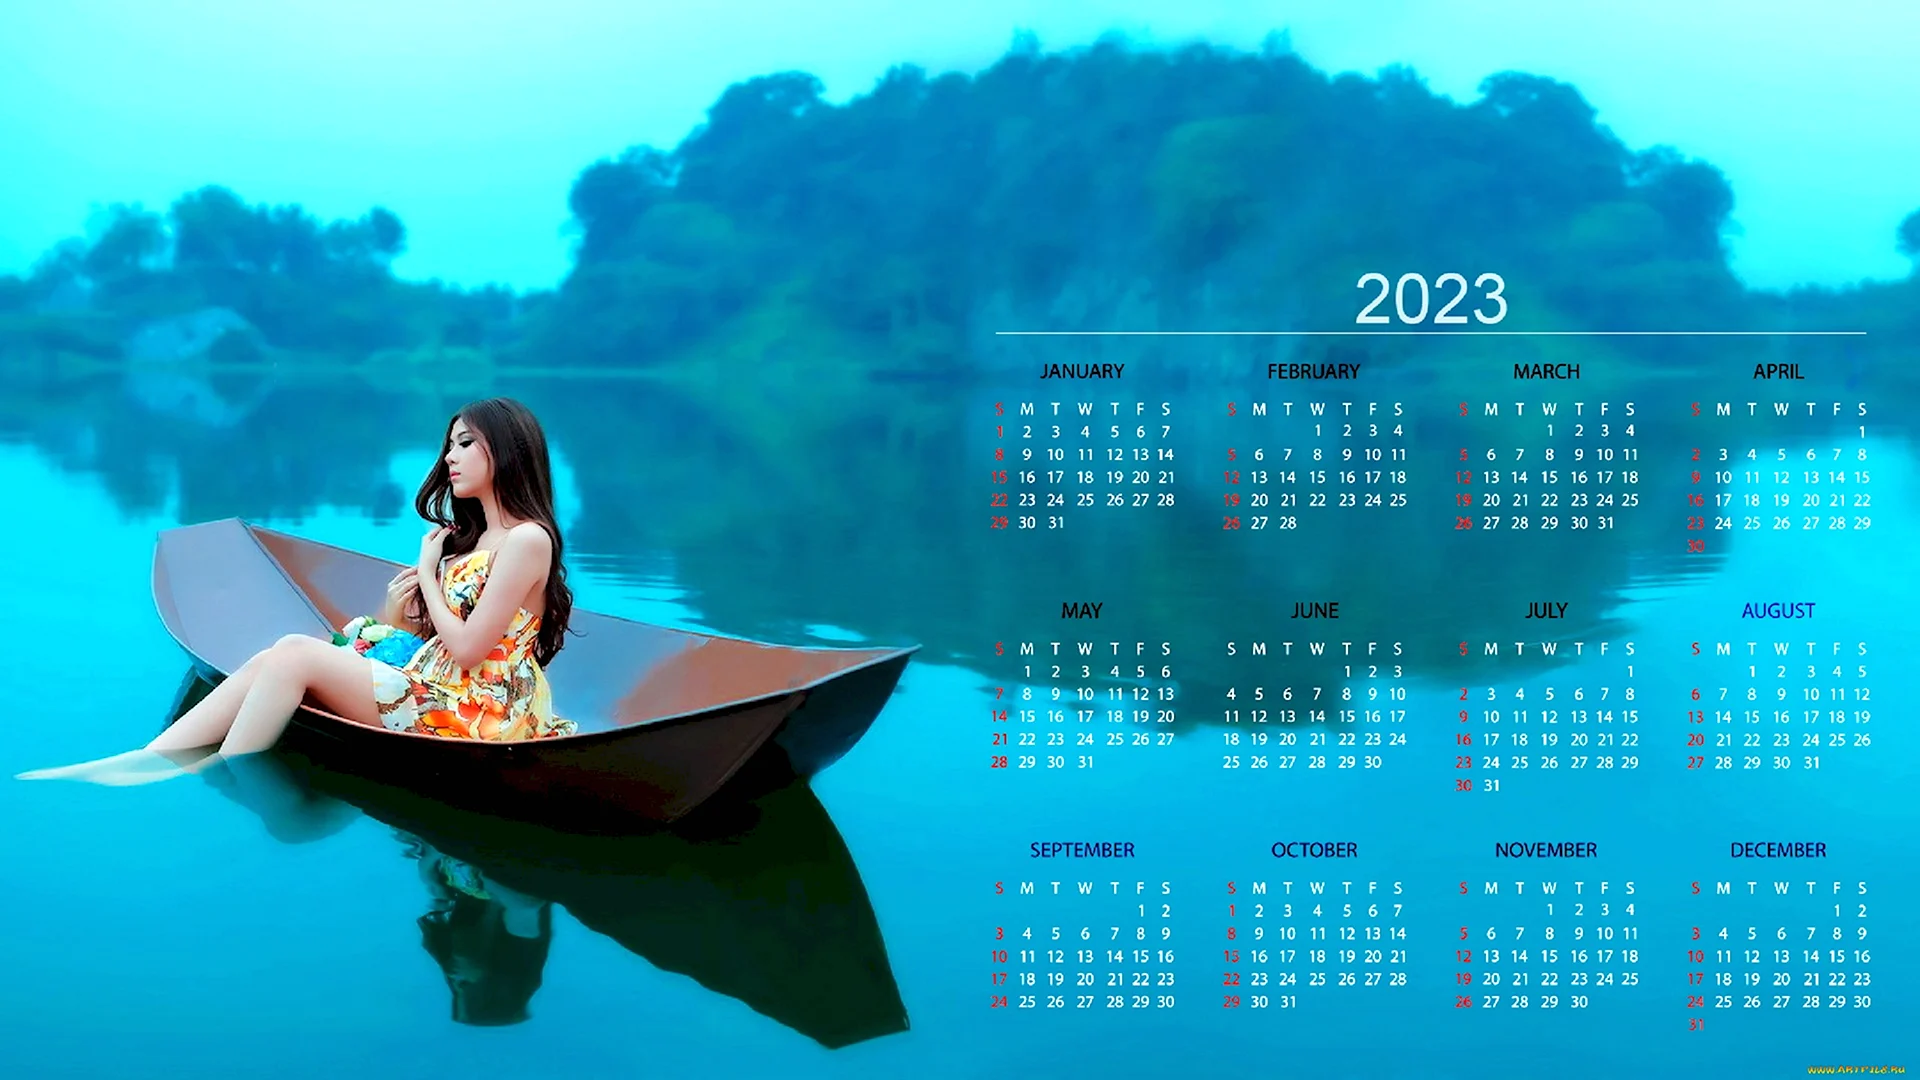 Красивый календарь на 2023 год с картинками